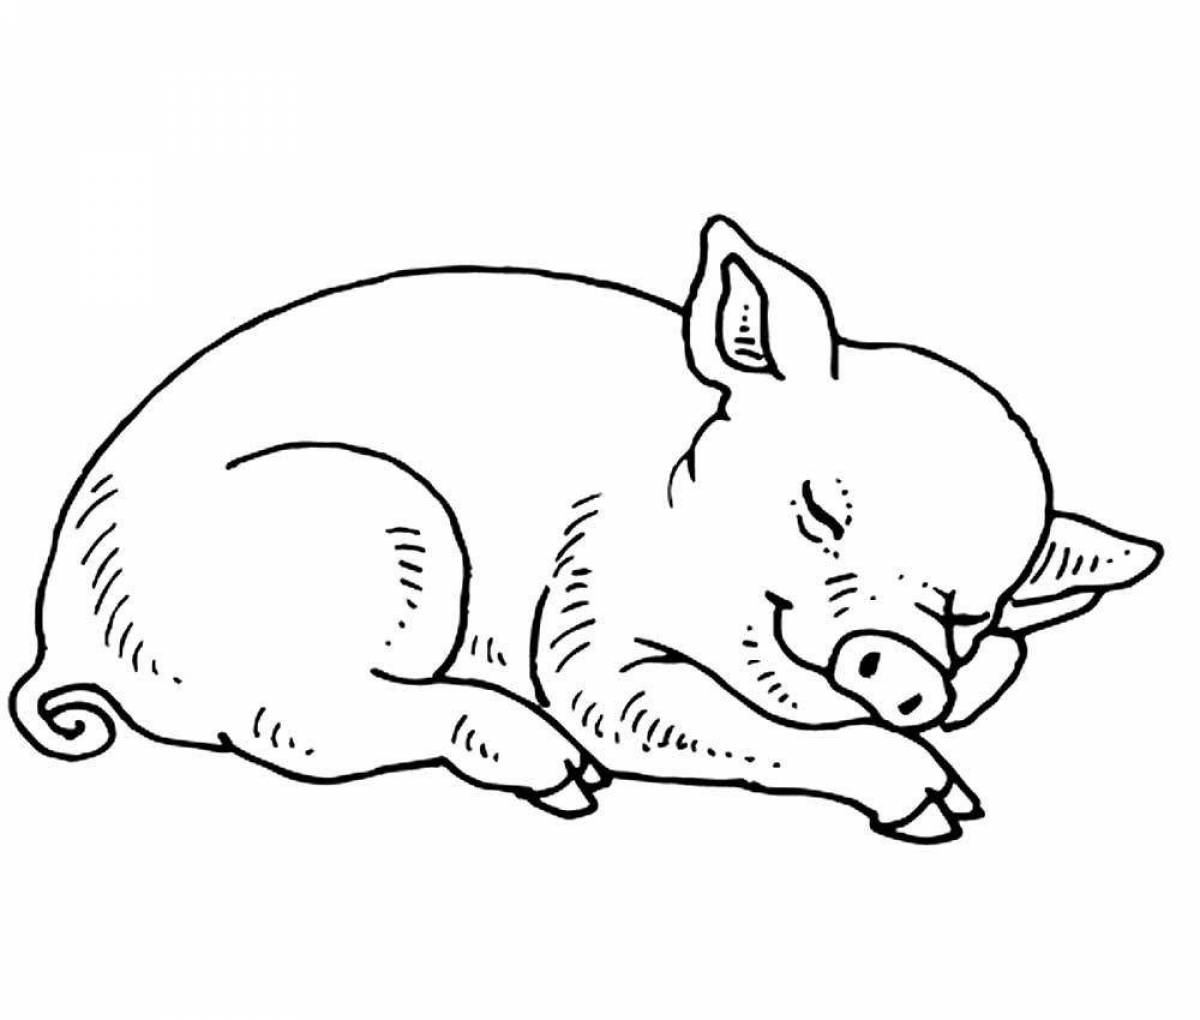 Увлекательная раскраска свинья для детей